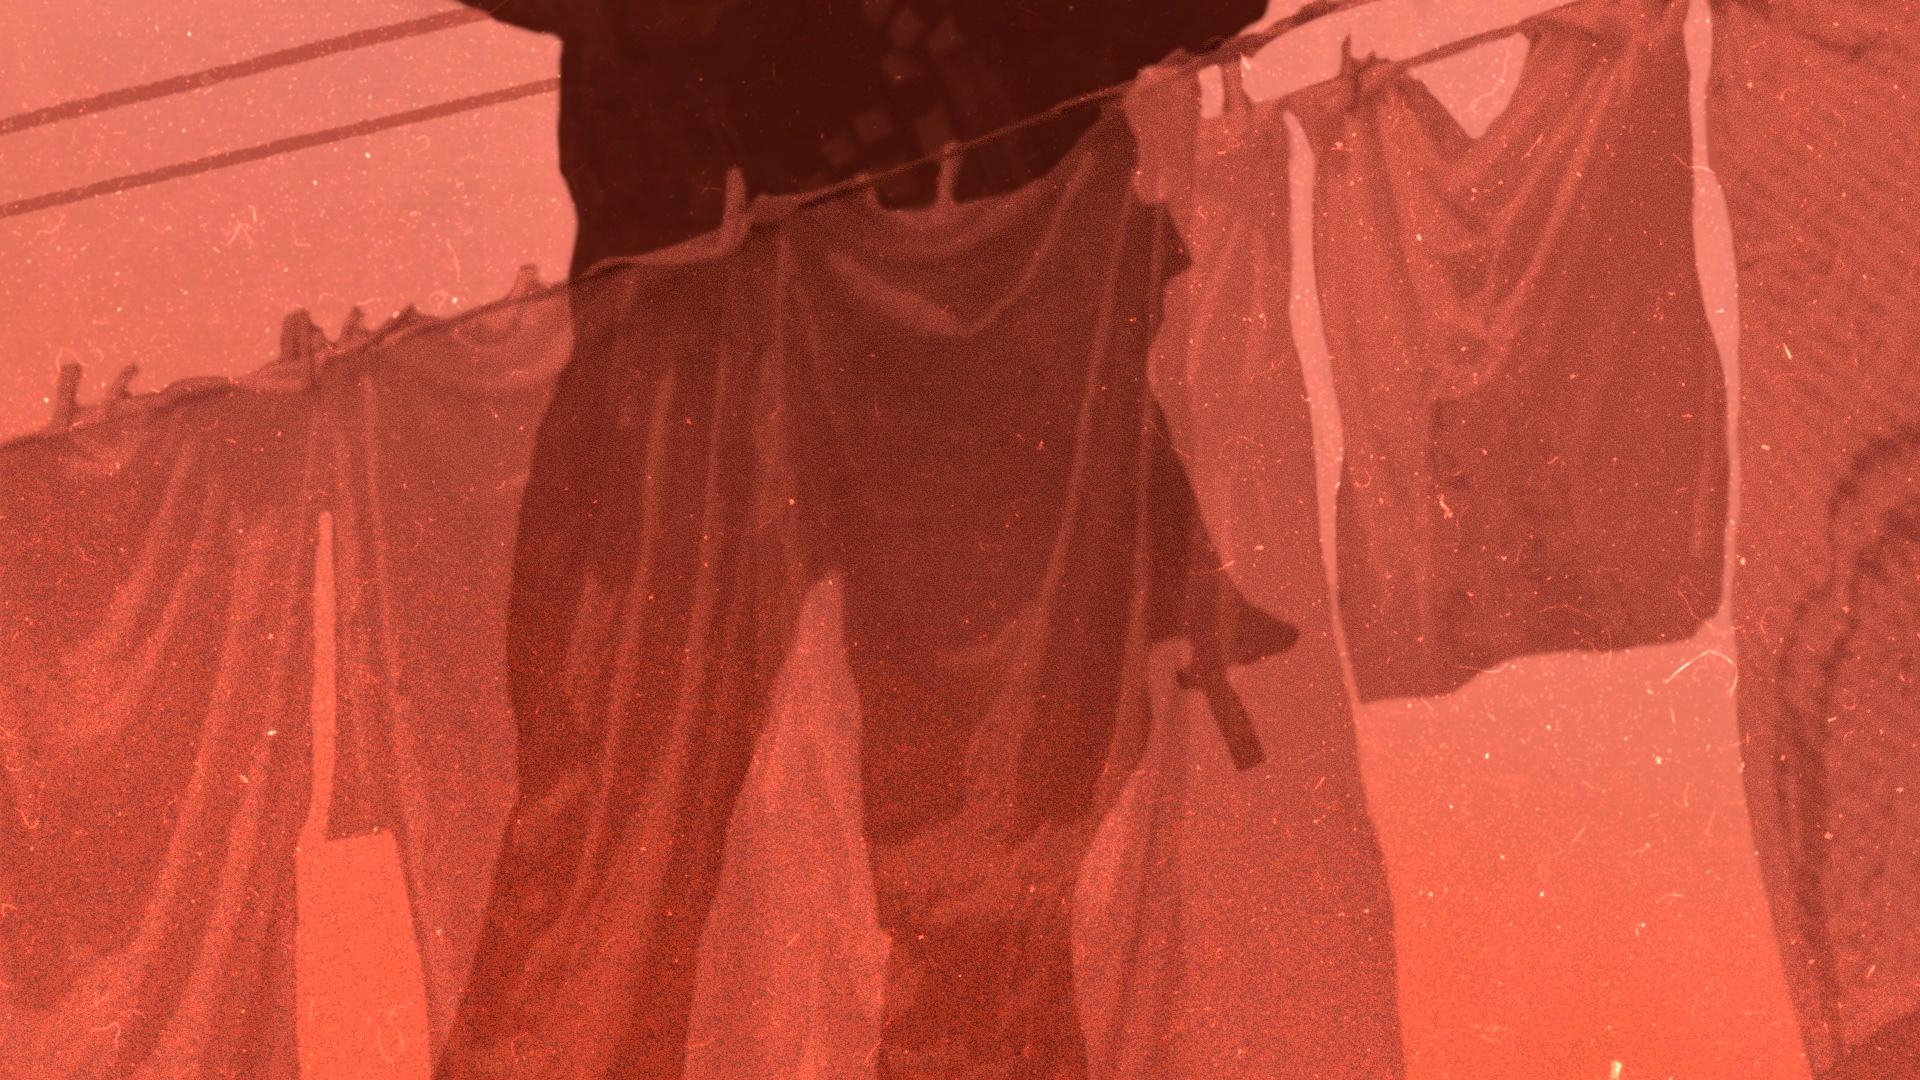 Ilustracja namalowana jest w brązowo-czerwonych barwach. Przedstawia wiszące na sznurku pranie, przez które widać cień osoby trzymającej karabin. Broń jest opuszczona na dół. Osoba jest widoczna tylko do wysokości ramion.